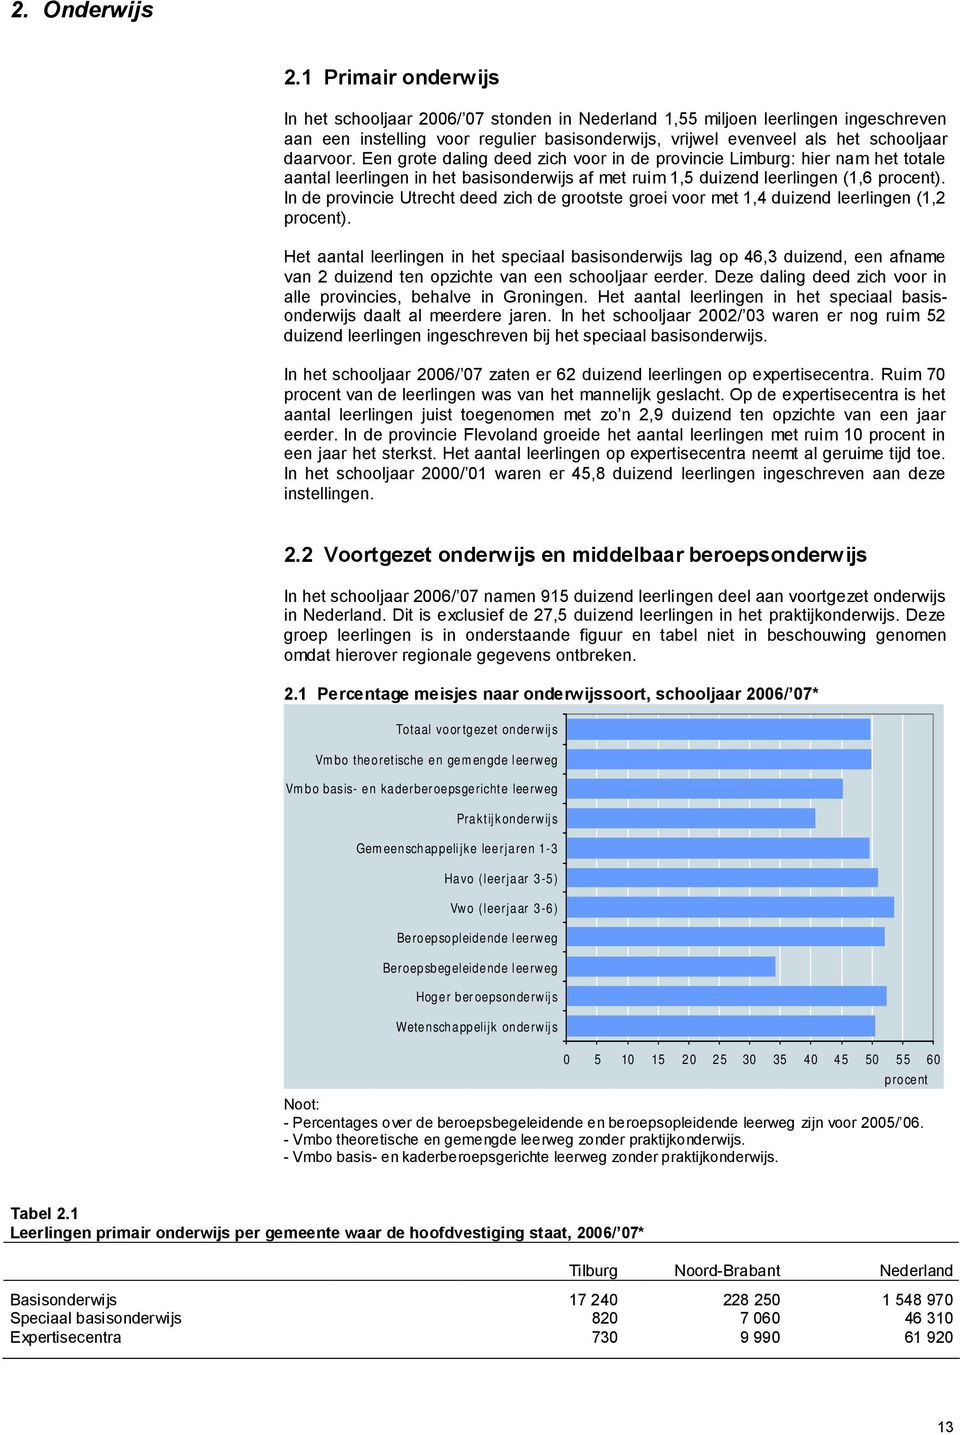 Een grote daling deed zich voor in de provincie Limburg: hier nam het totale aantal leerlingen in het basisonderwijs af met ruim 1,5 duizend leerlingen (1,6 procent).